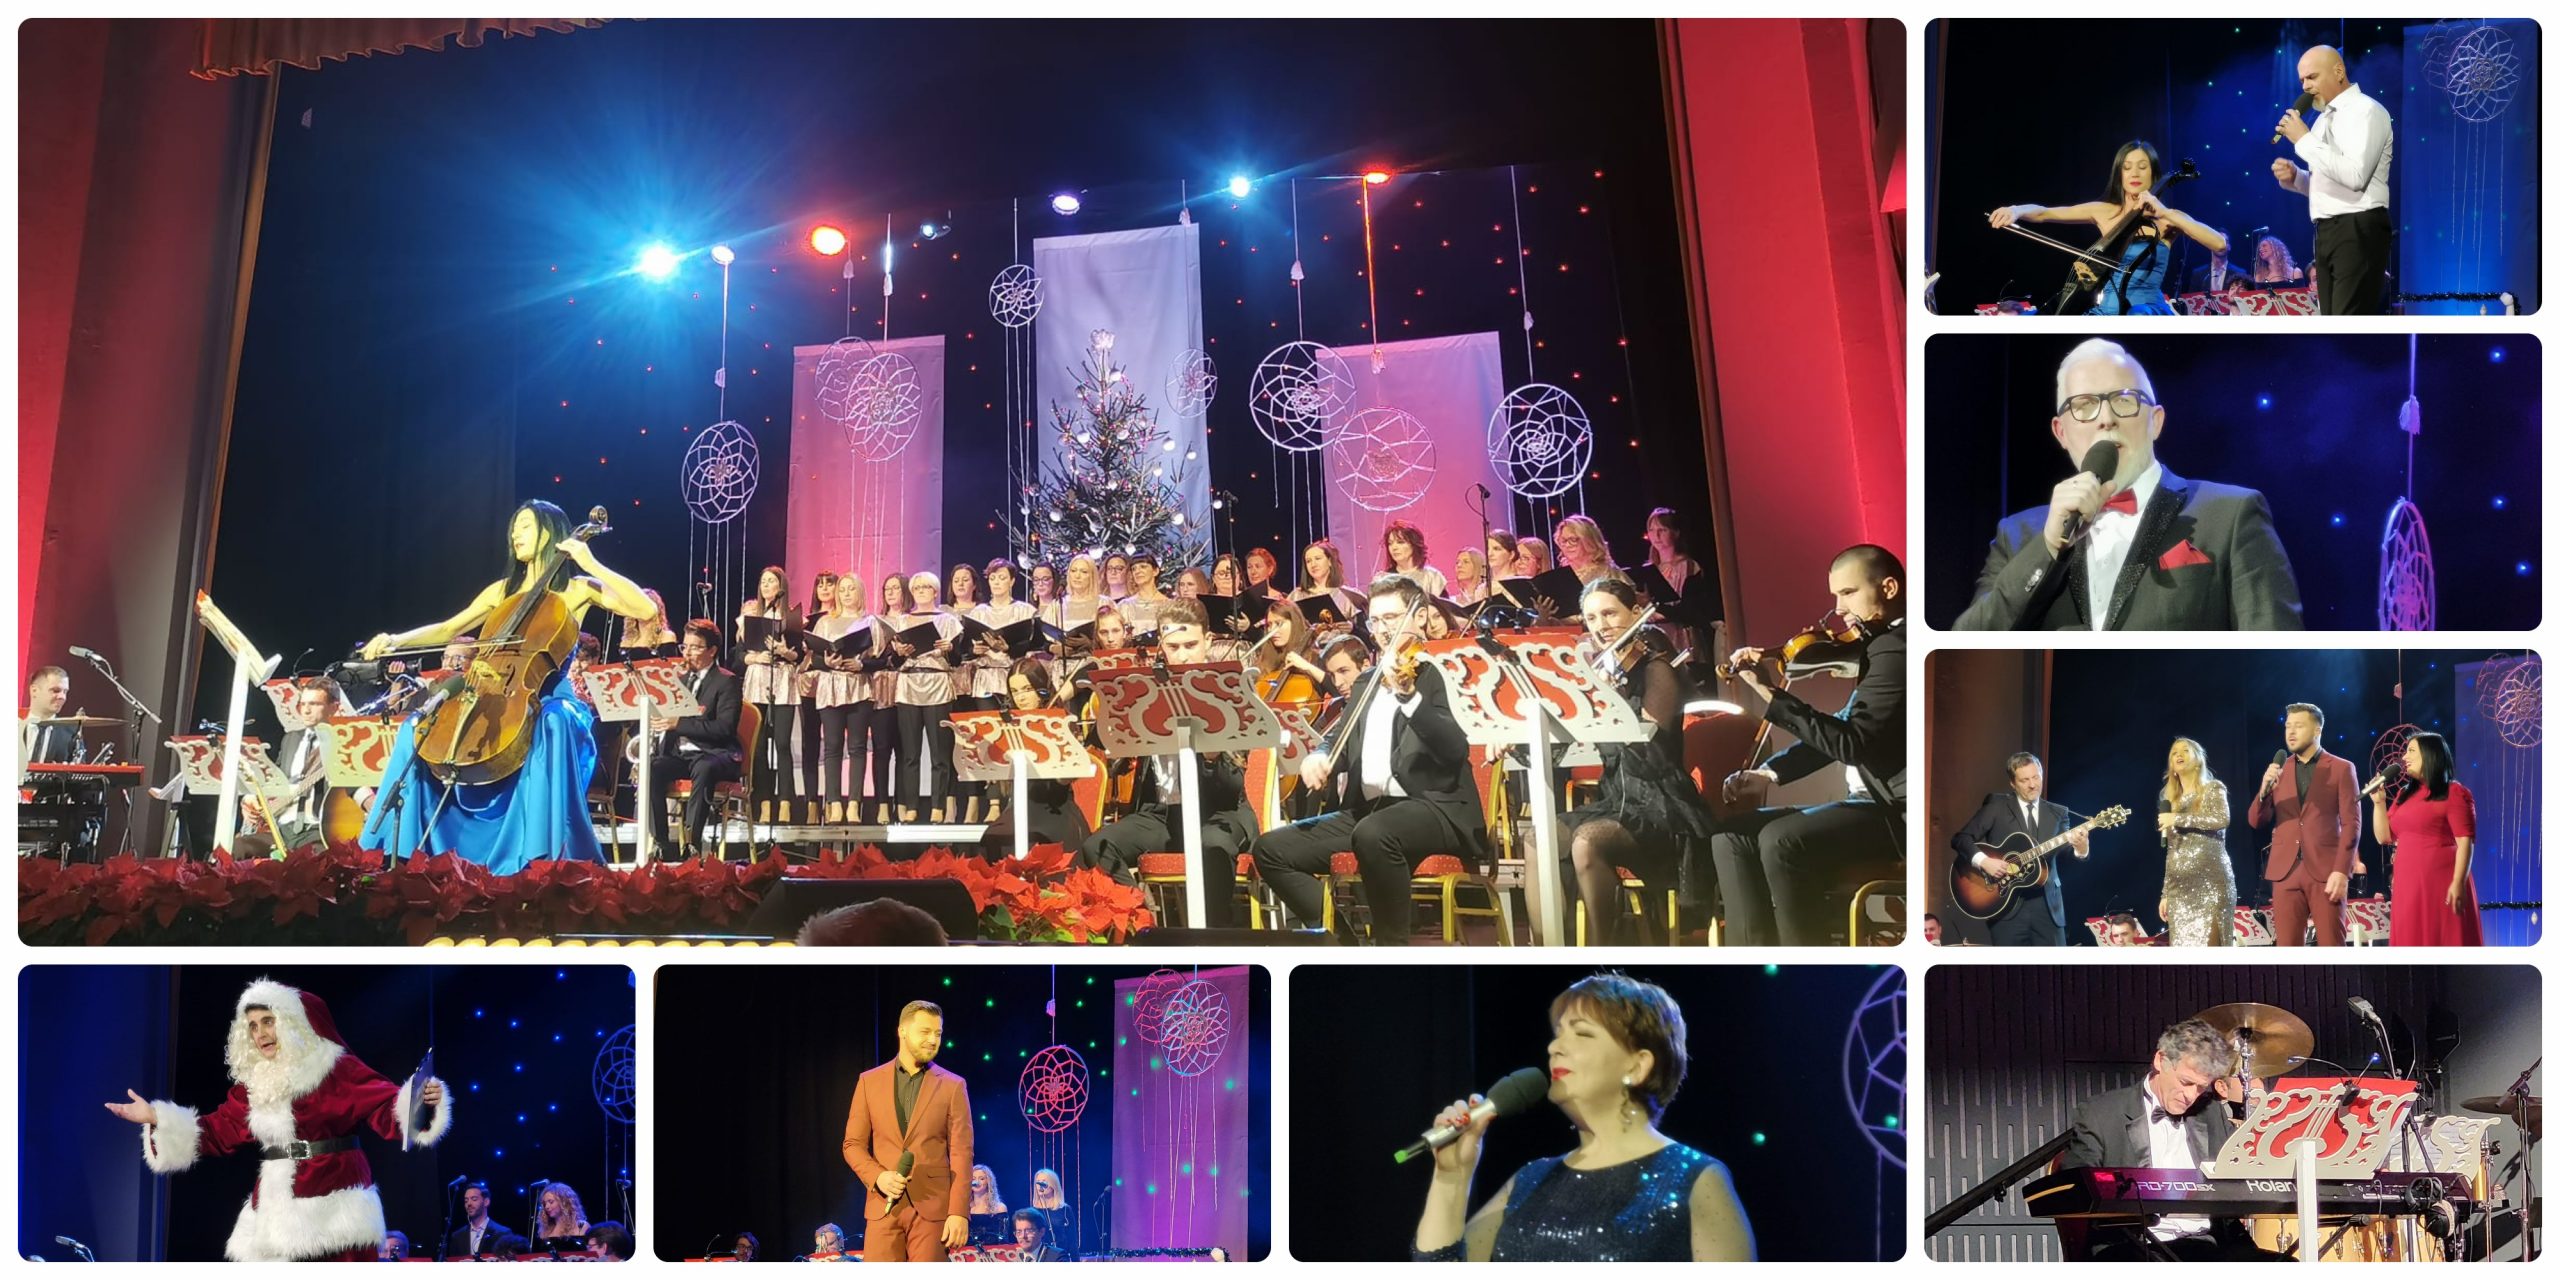 [FOTO] Održan Božićni gala koncert: Aplauz publike potvrdio da je Bjelovar pripremio pravi spektakl!